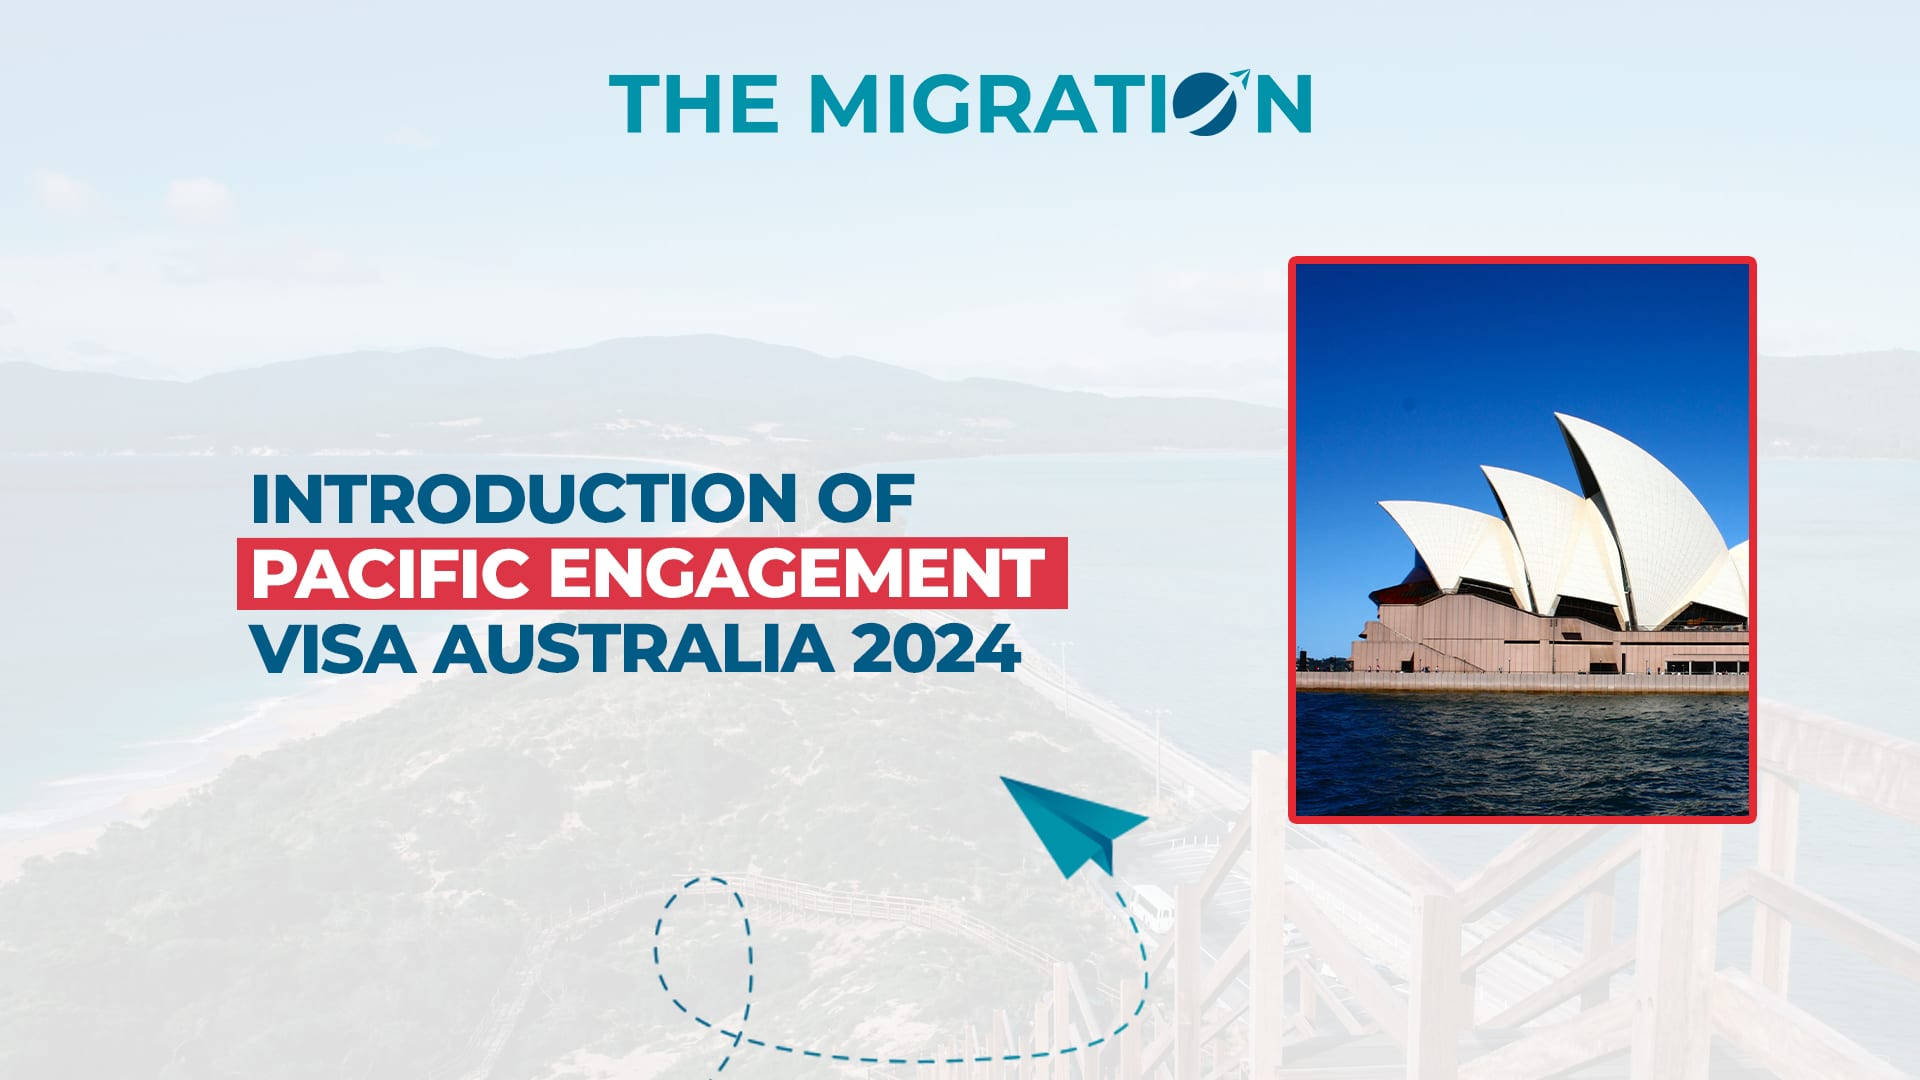 Pacific Engagement Visa Australia 2024